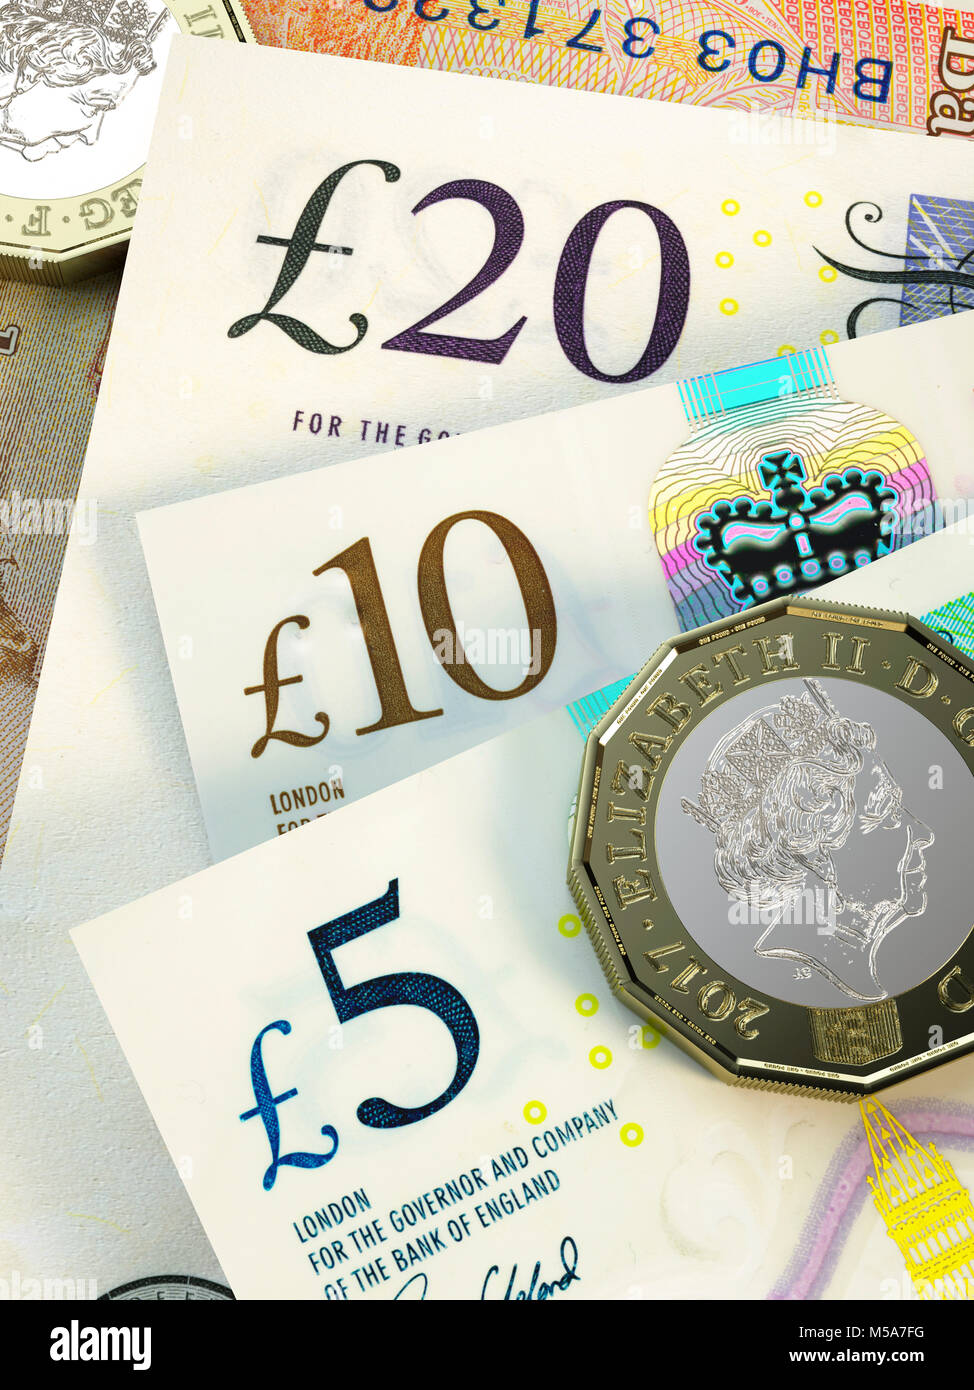 Regno Unito denaro - Nuovo problema £20, £10, £5 Pound Sterling note close up con nuovo design 2017 £ 1 una libbra di monete Foto Stock